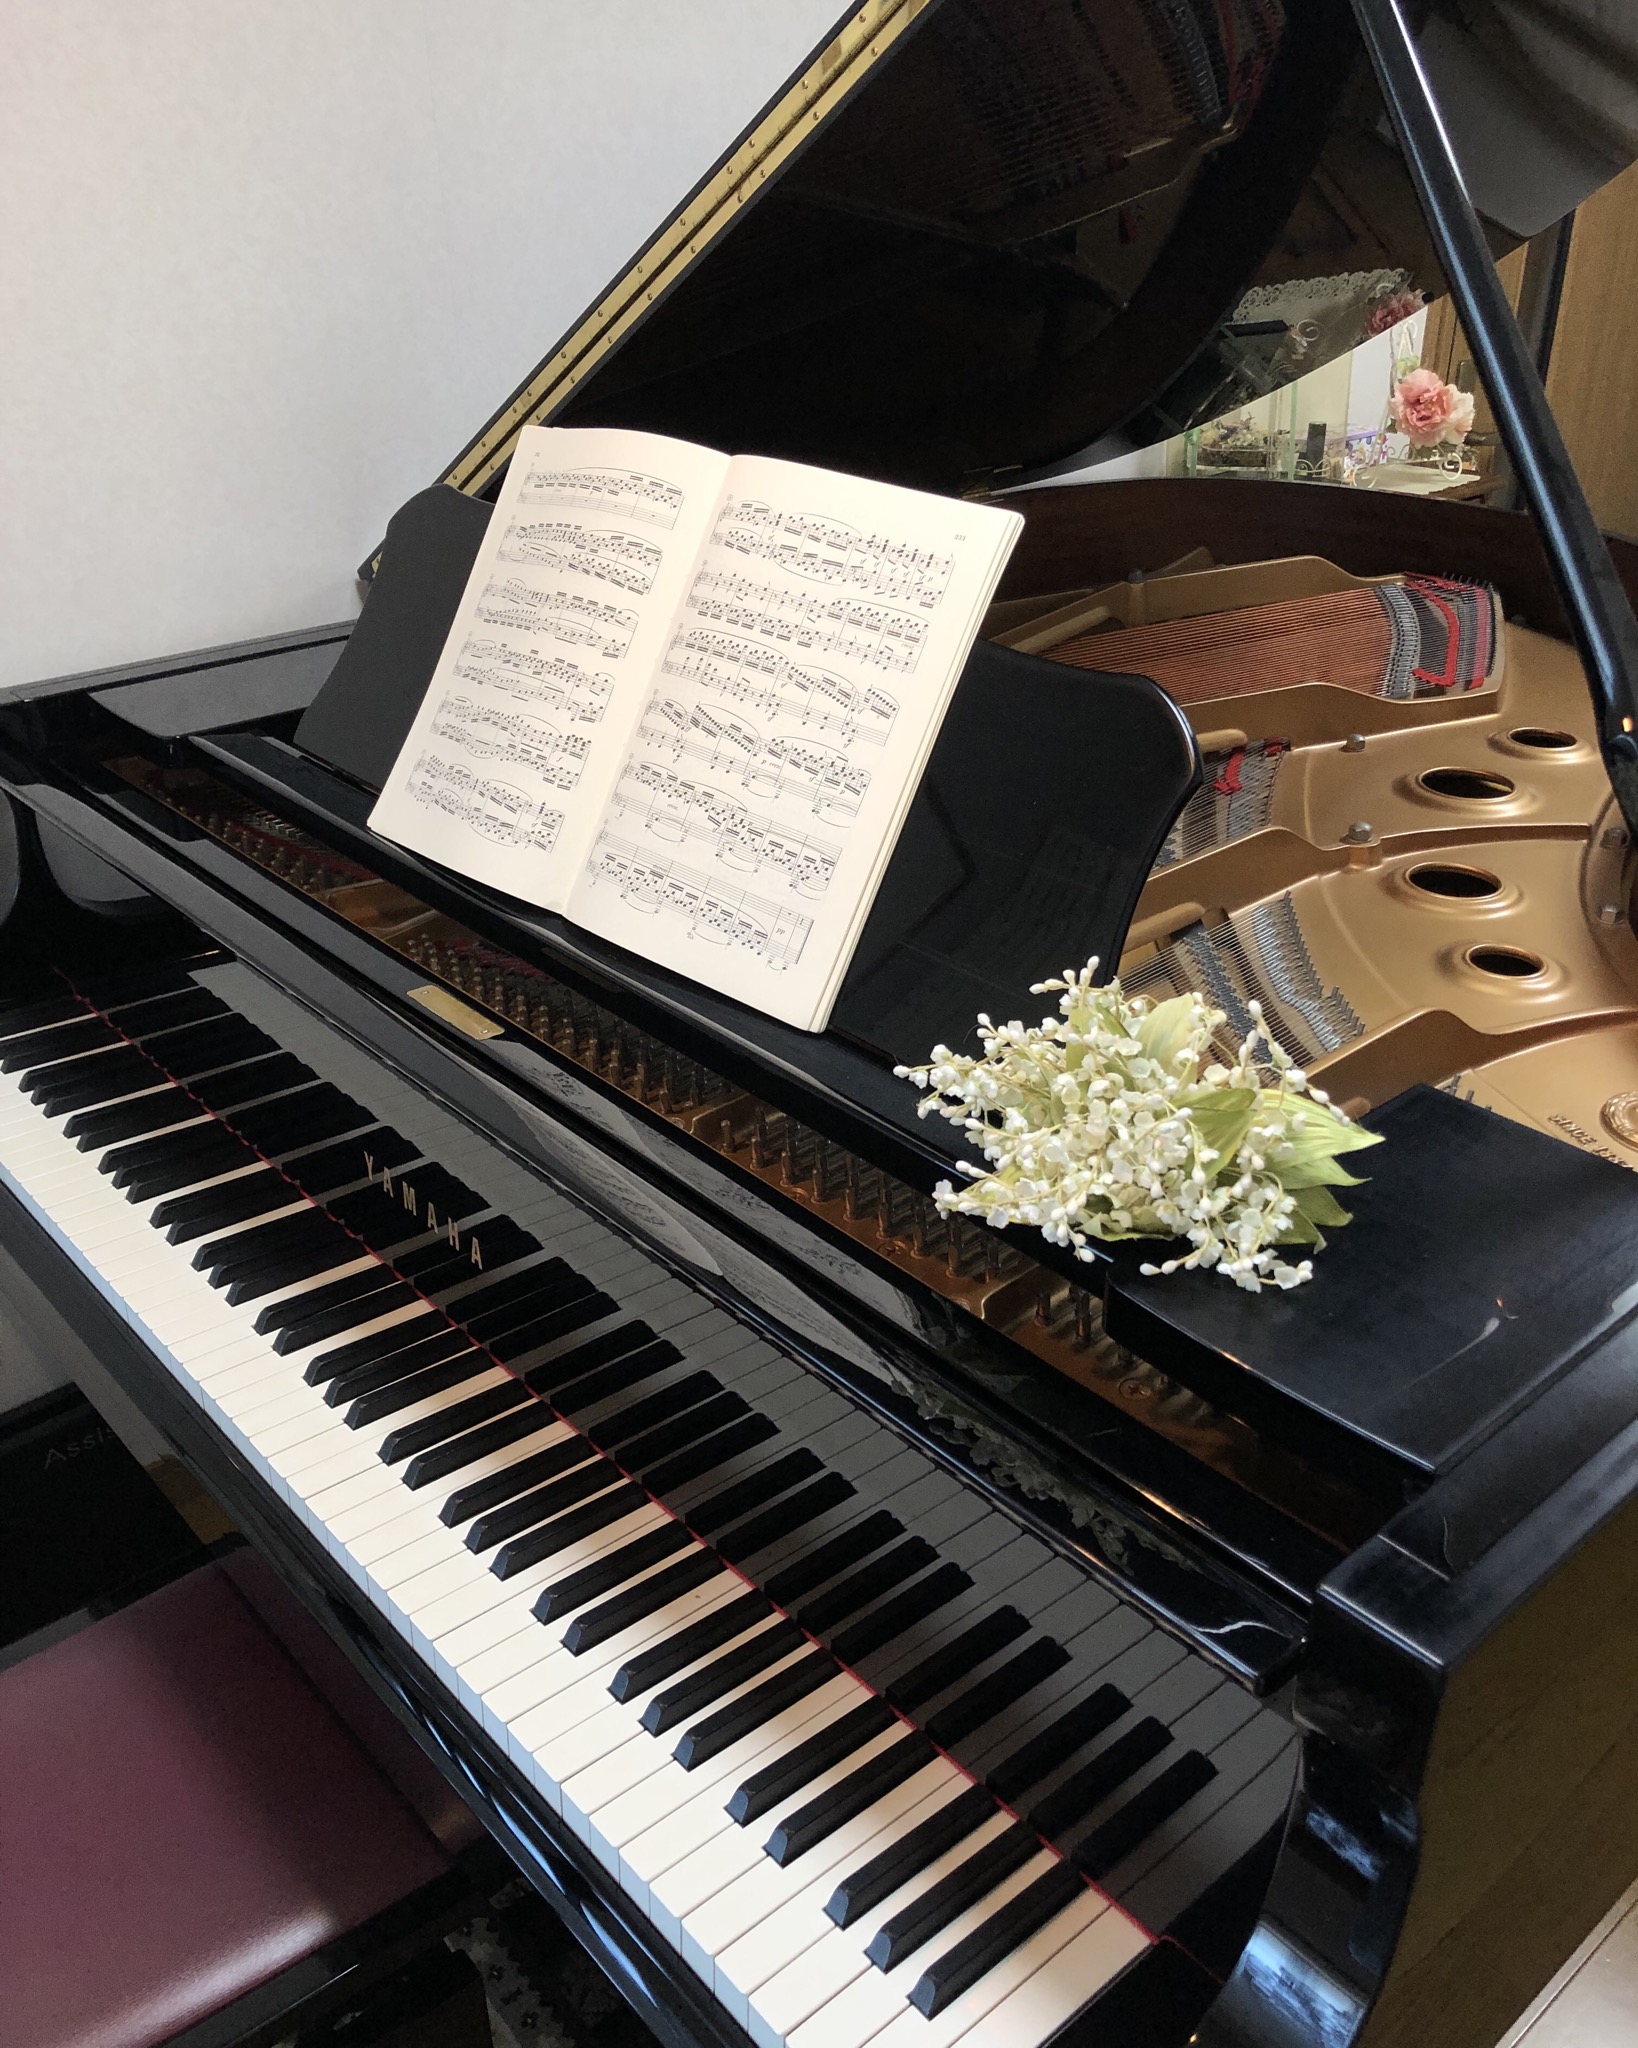 横浜市都筑区北山田のピアノ教室の雰囲気がわかる写真